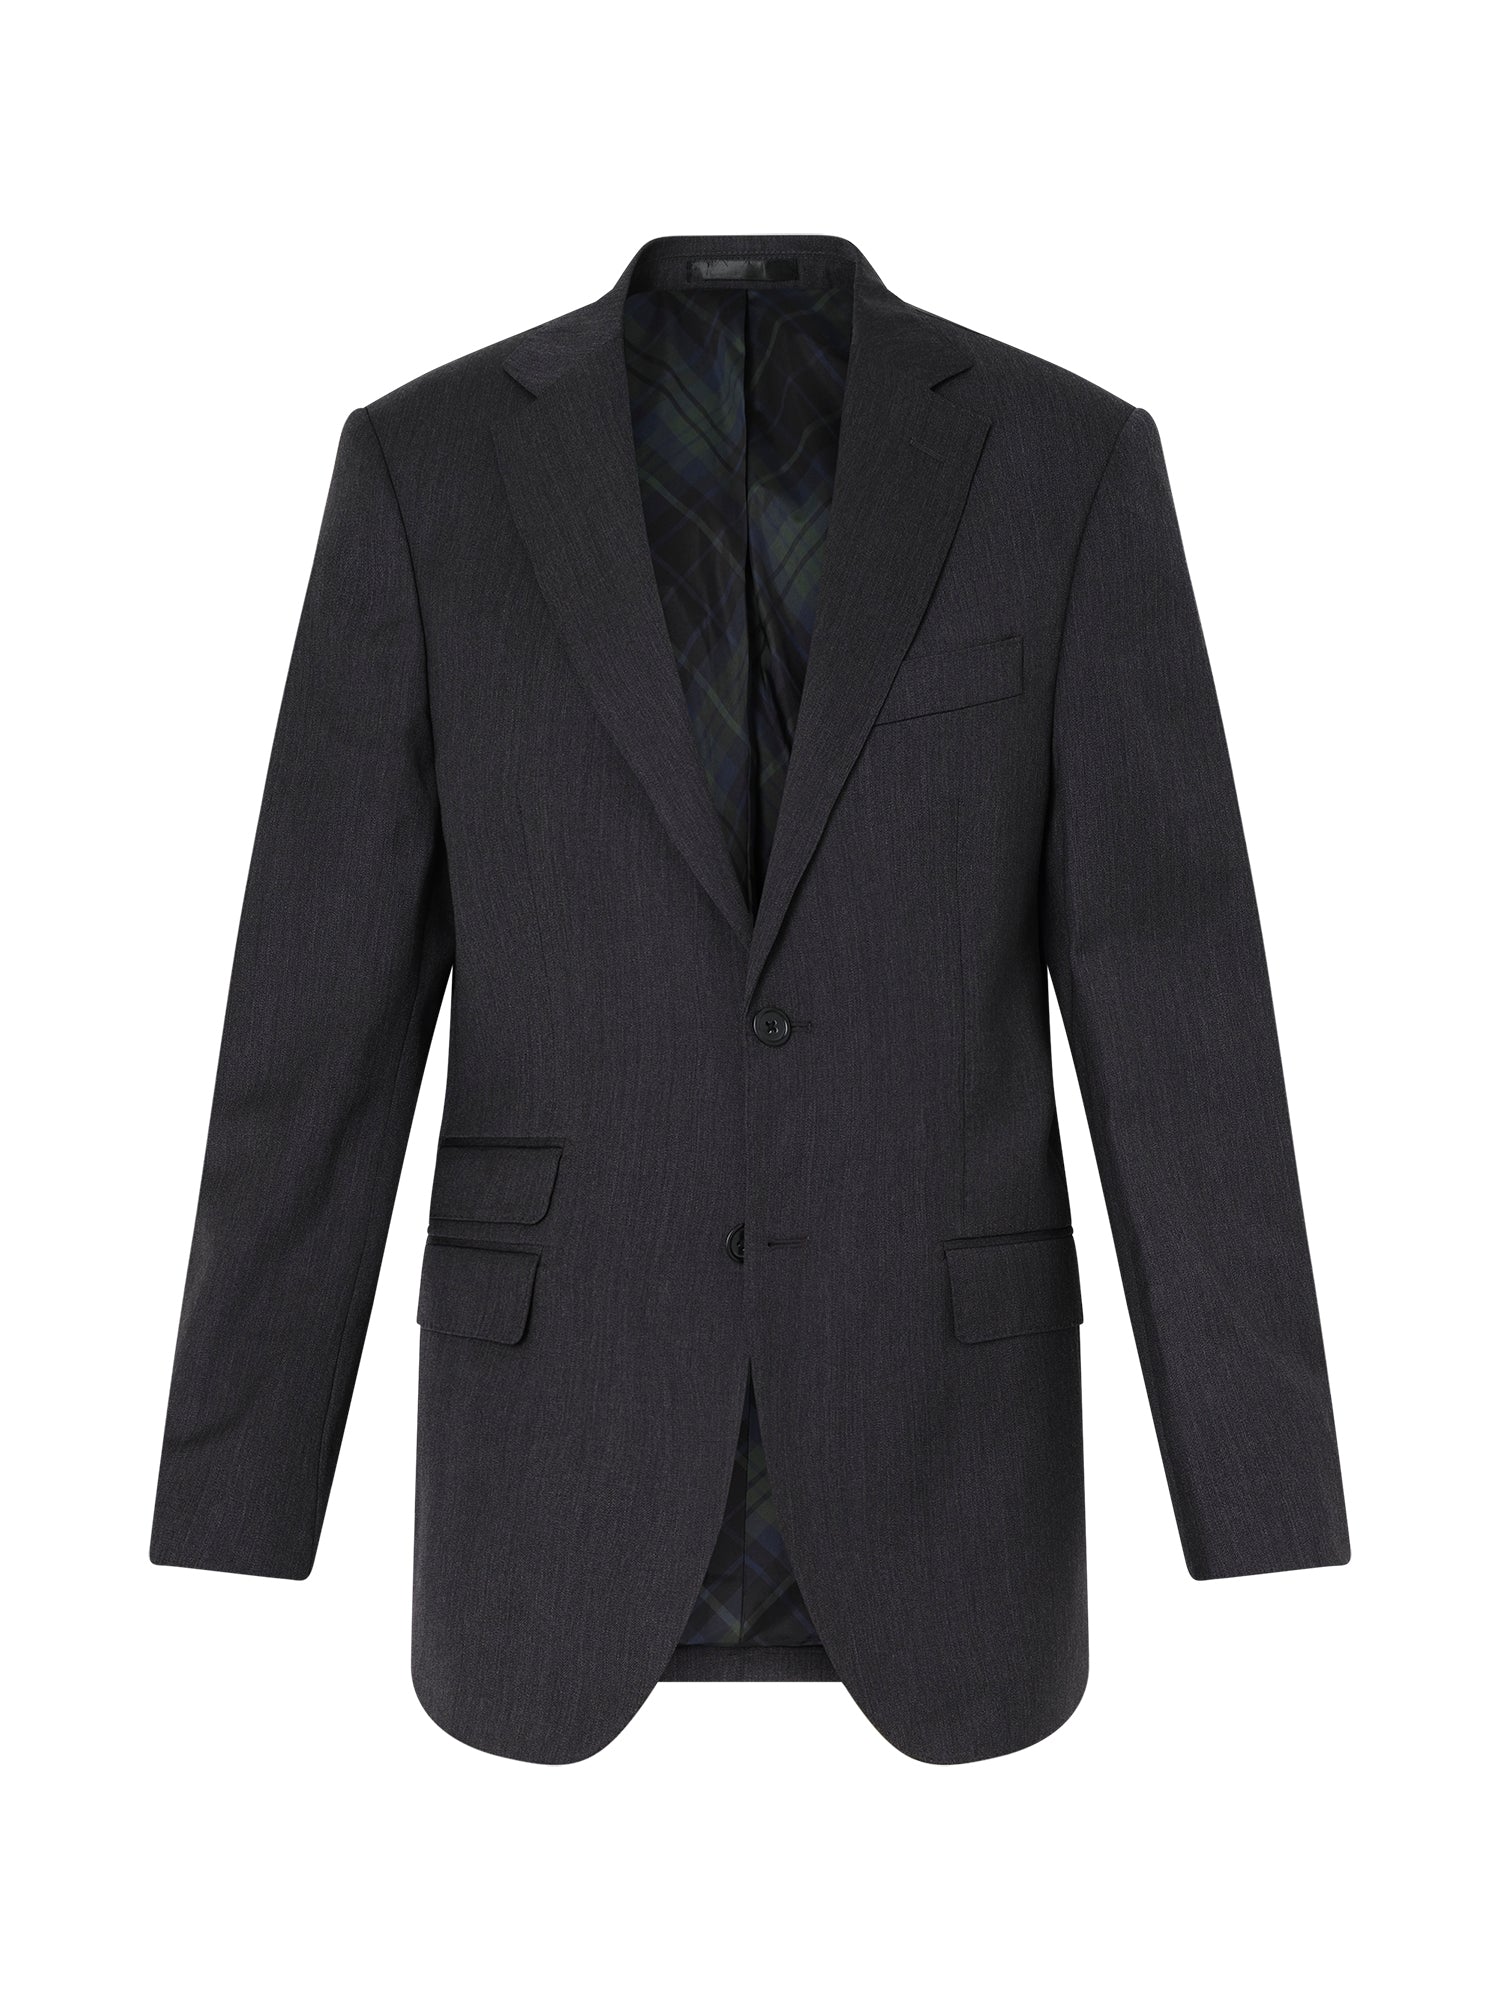 Charcoal San Marco Suit Jacket